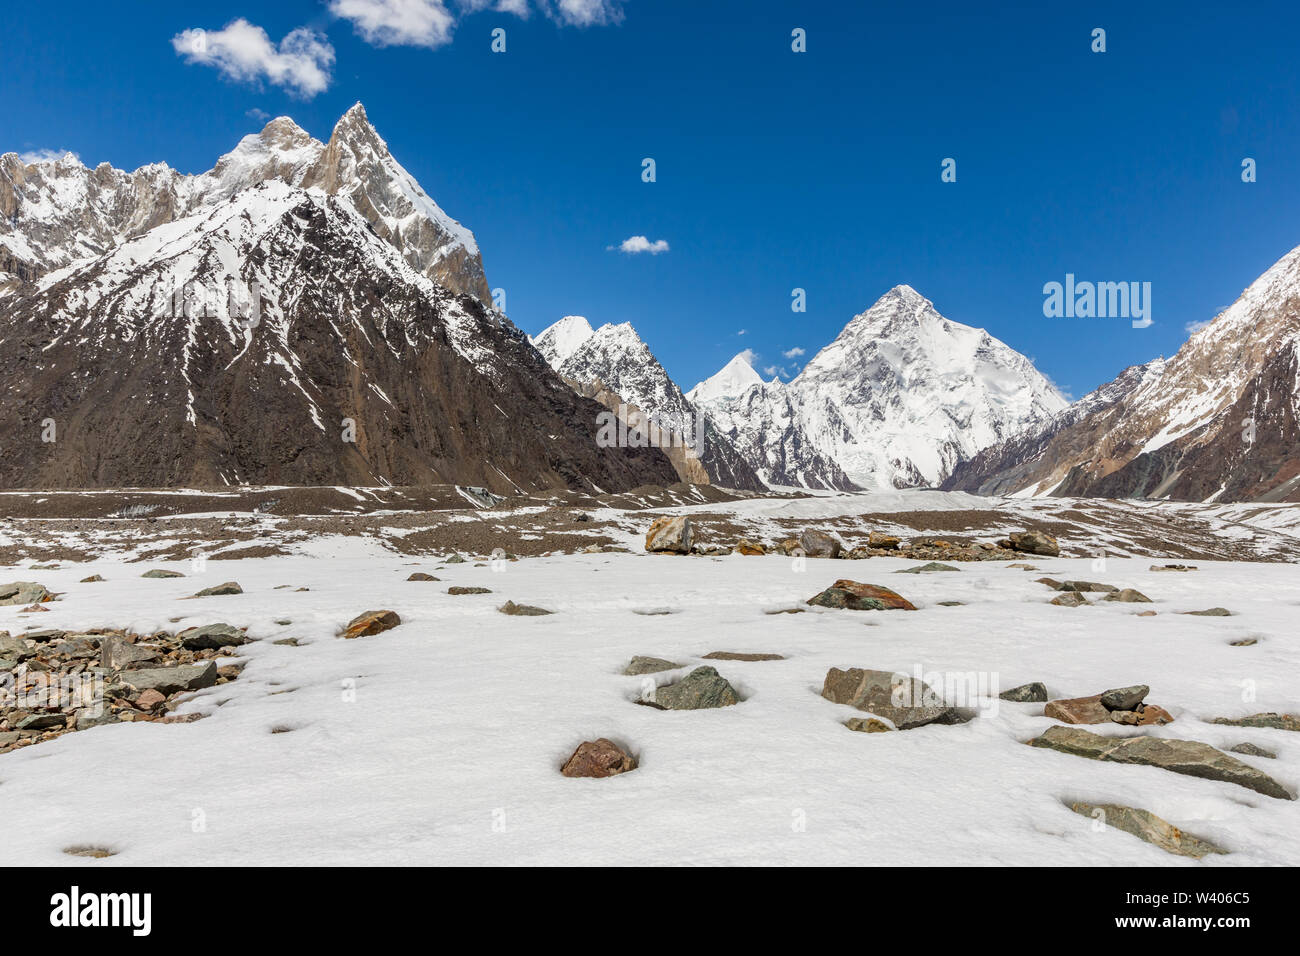 K2 mountain peak, second highest mountain in the world, K2 trek, Pakistan, Asia Stock Photo